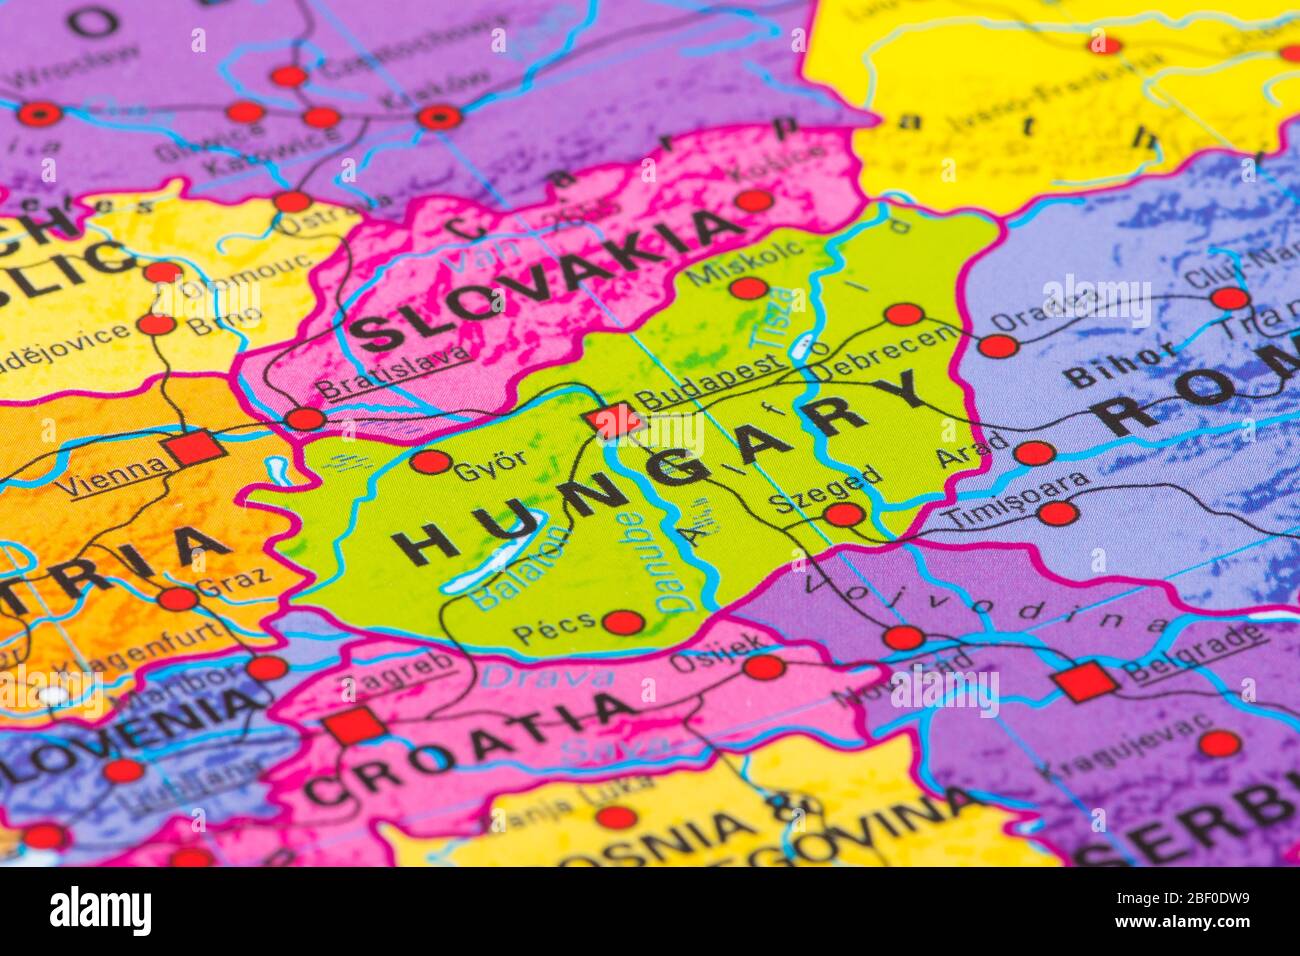 Europa, Karte von Ungarn Stockfotografie - Alamy